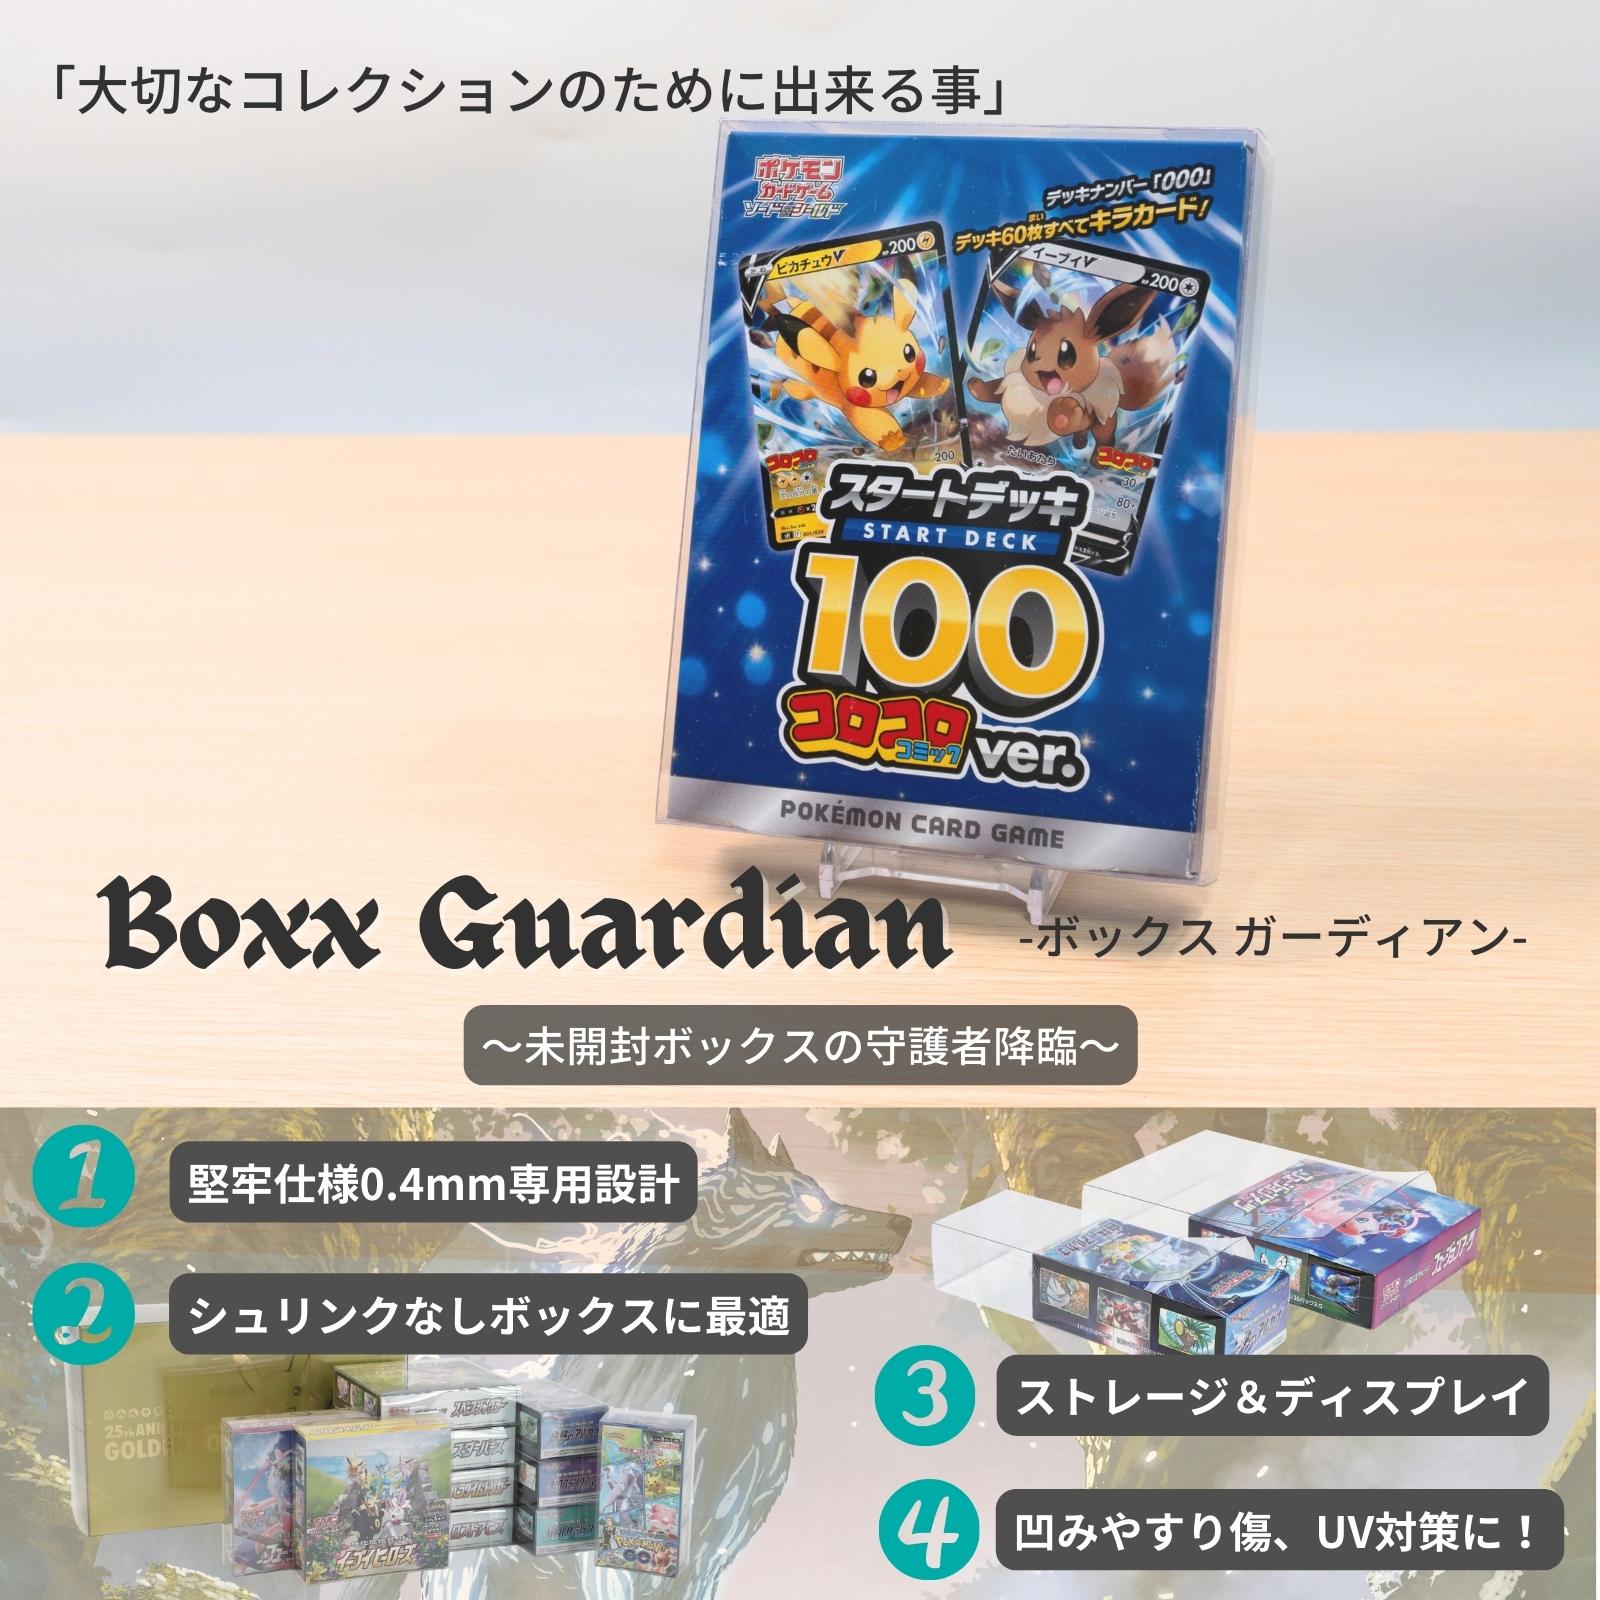 Boxx Guardian ポケモンカードBOX用 スタートデッキ100コロコロ